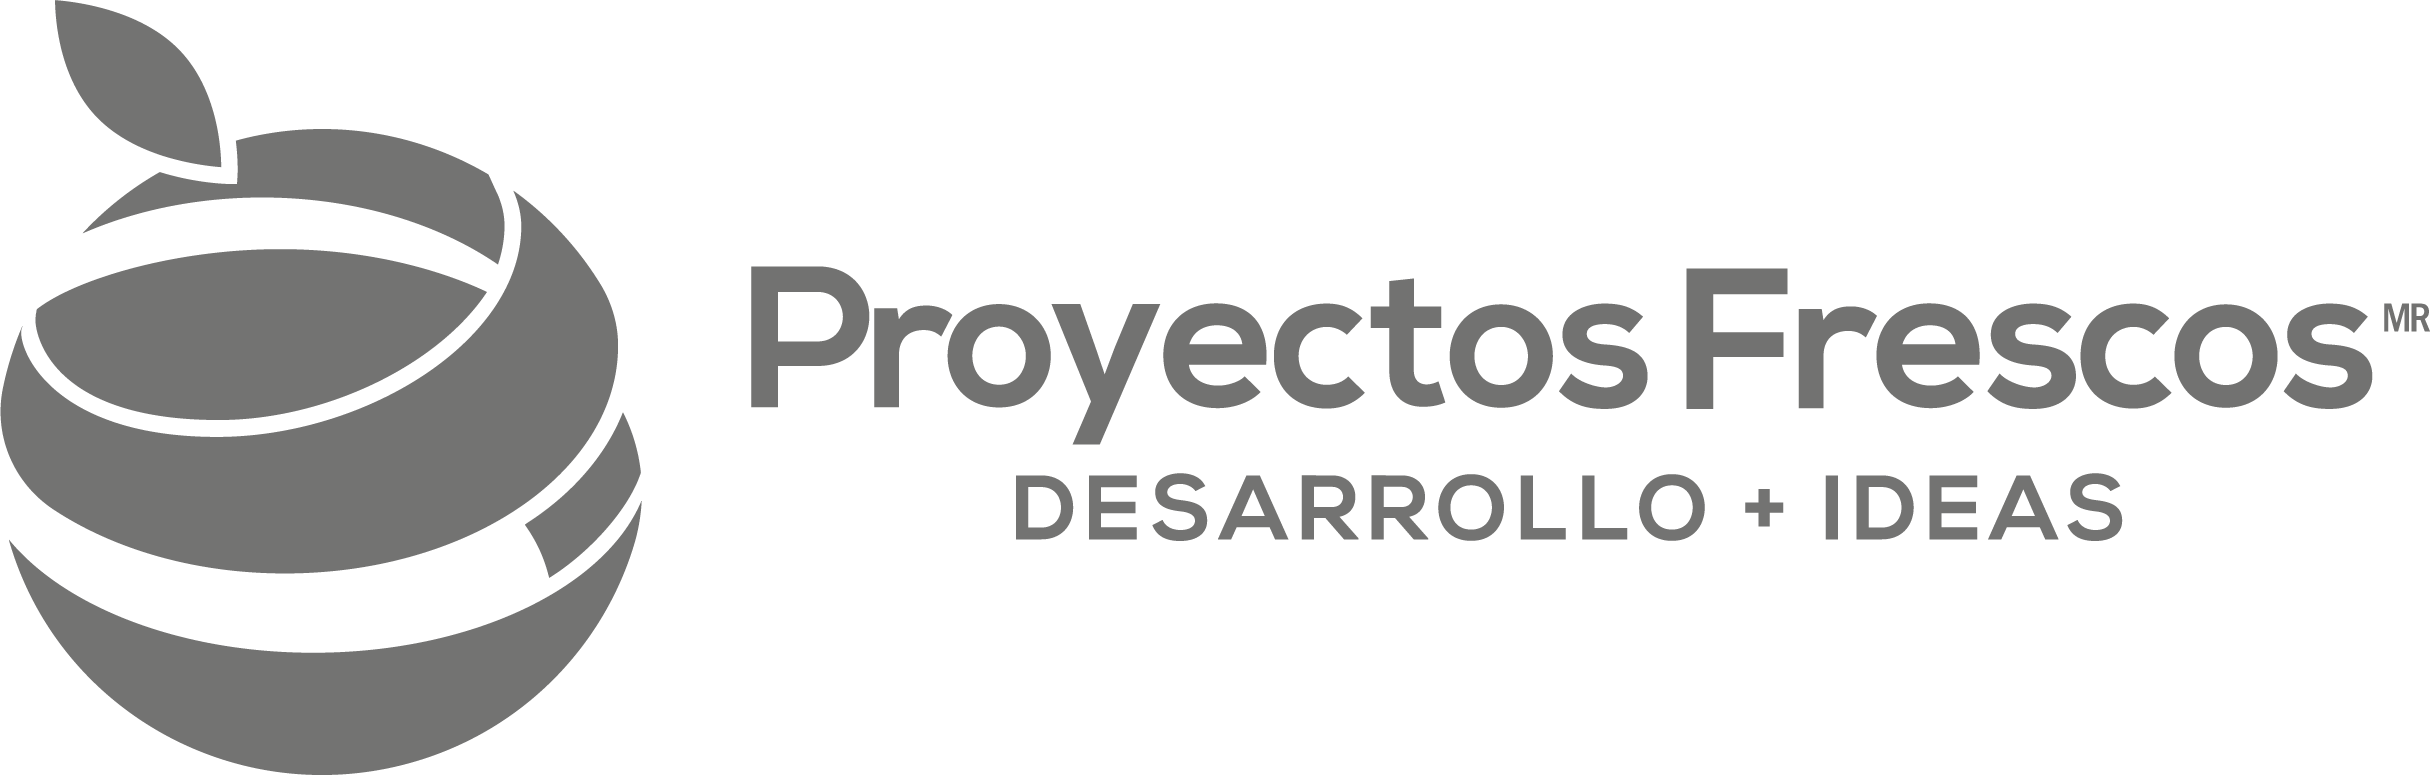 Proyectos Frescos - Desarrollo  + Ideas